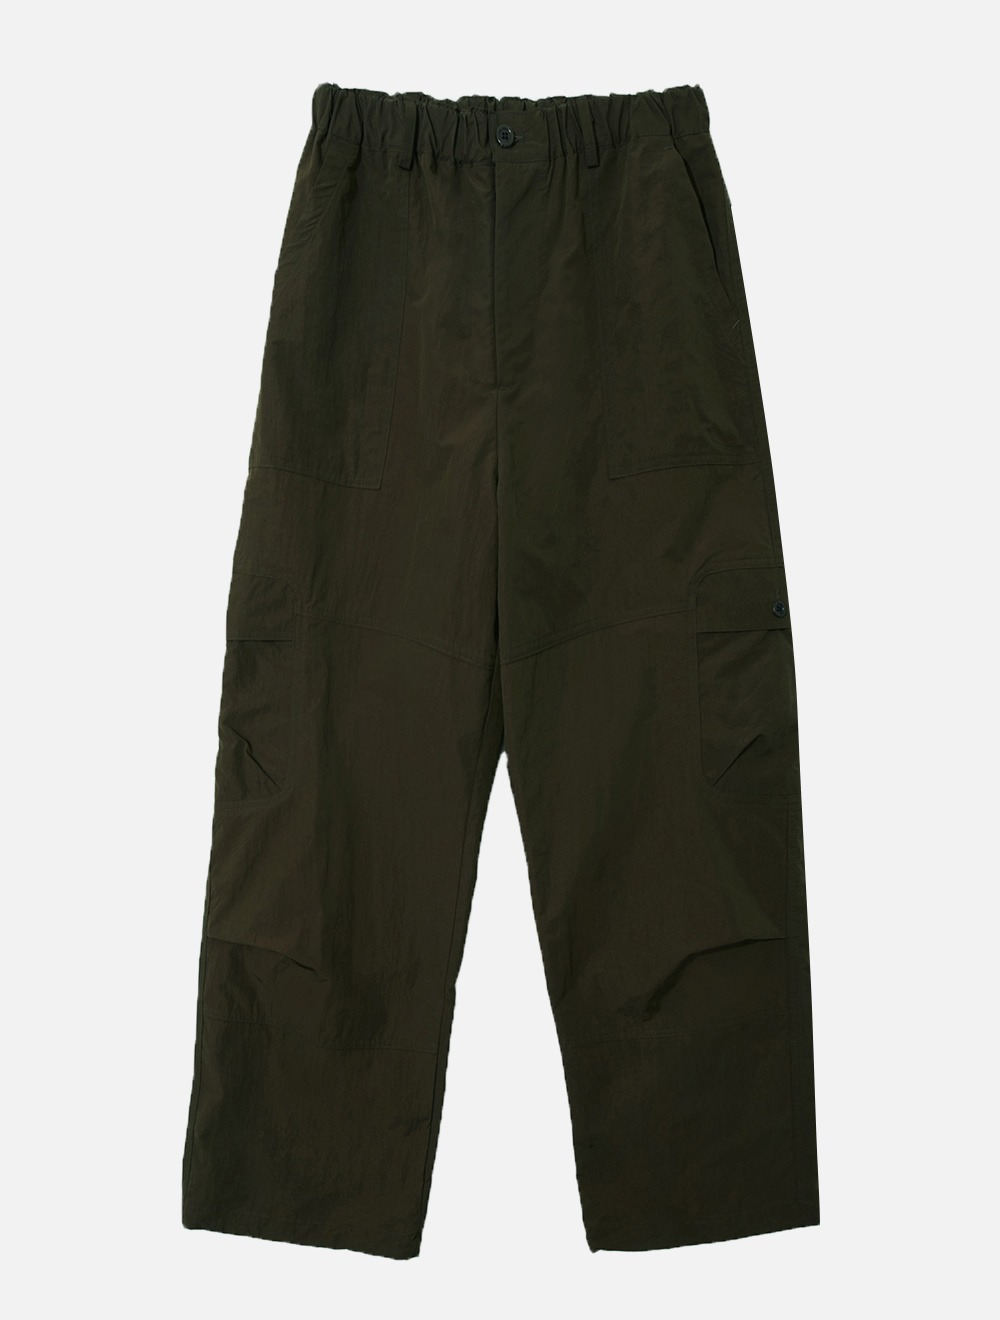 round cargo pants (khaki)